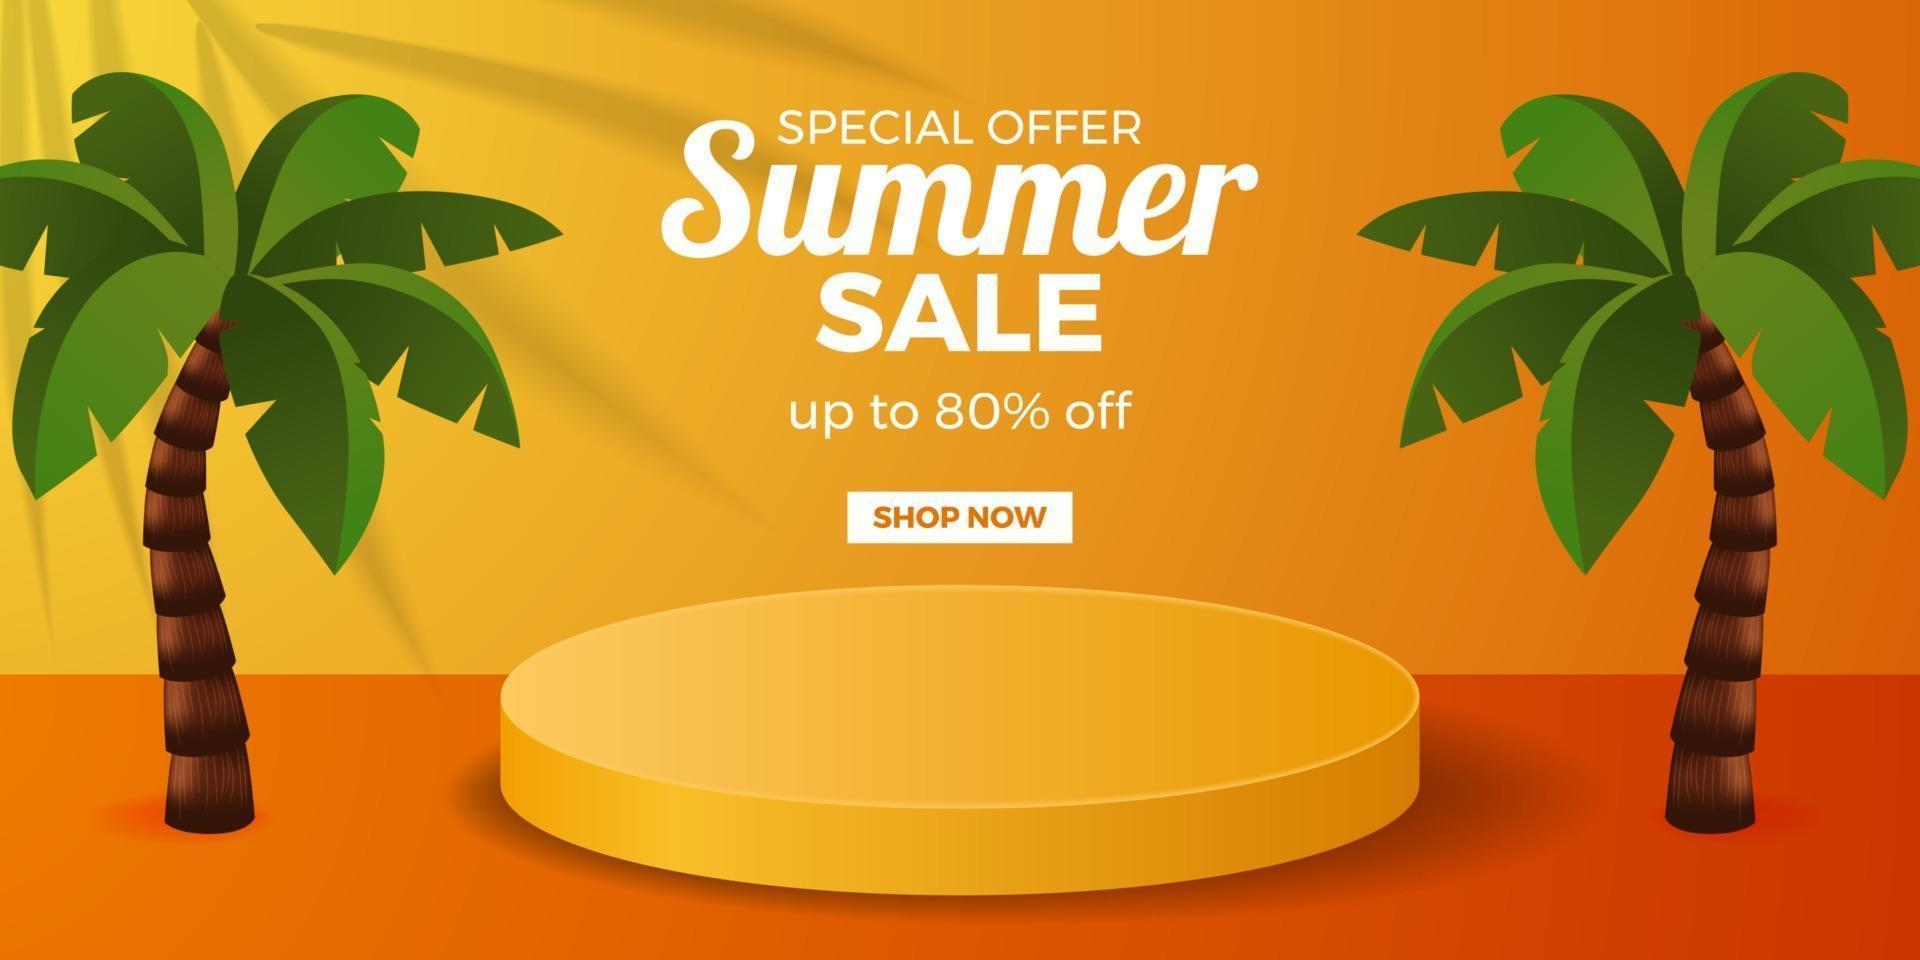 bannière d'offre de vente d'été avec affichage sur piédestal de podium avec fond orange vecteur